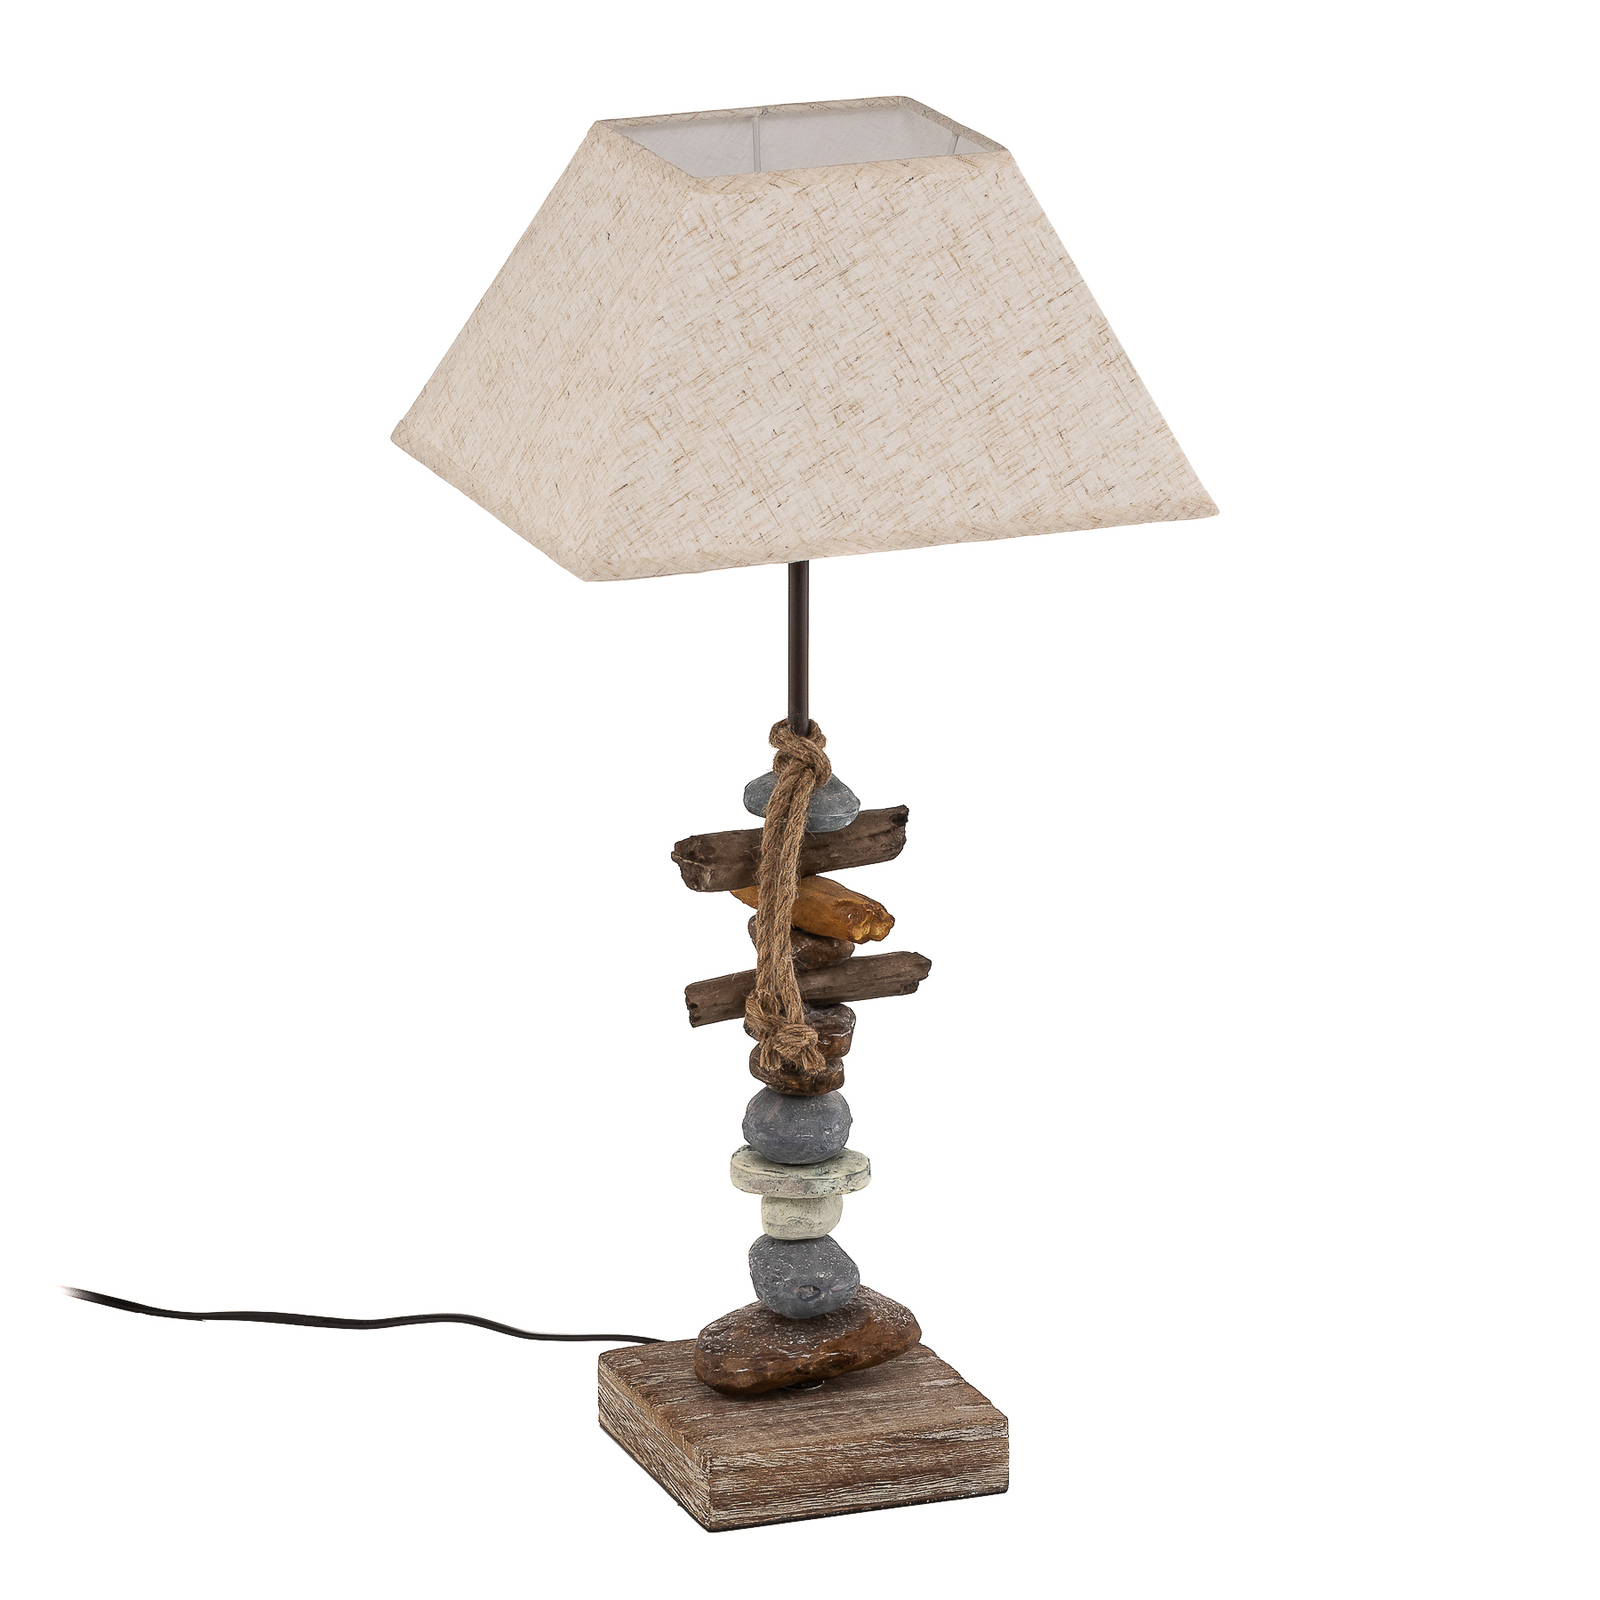 Seregon bordlampe med steindekorasjon, høyde 63 cm